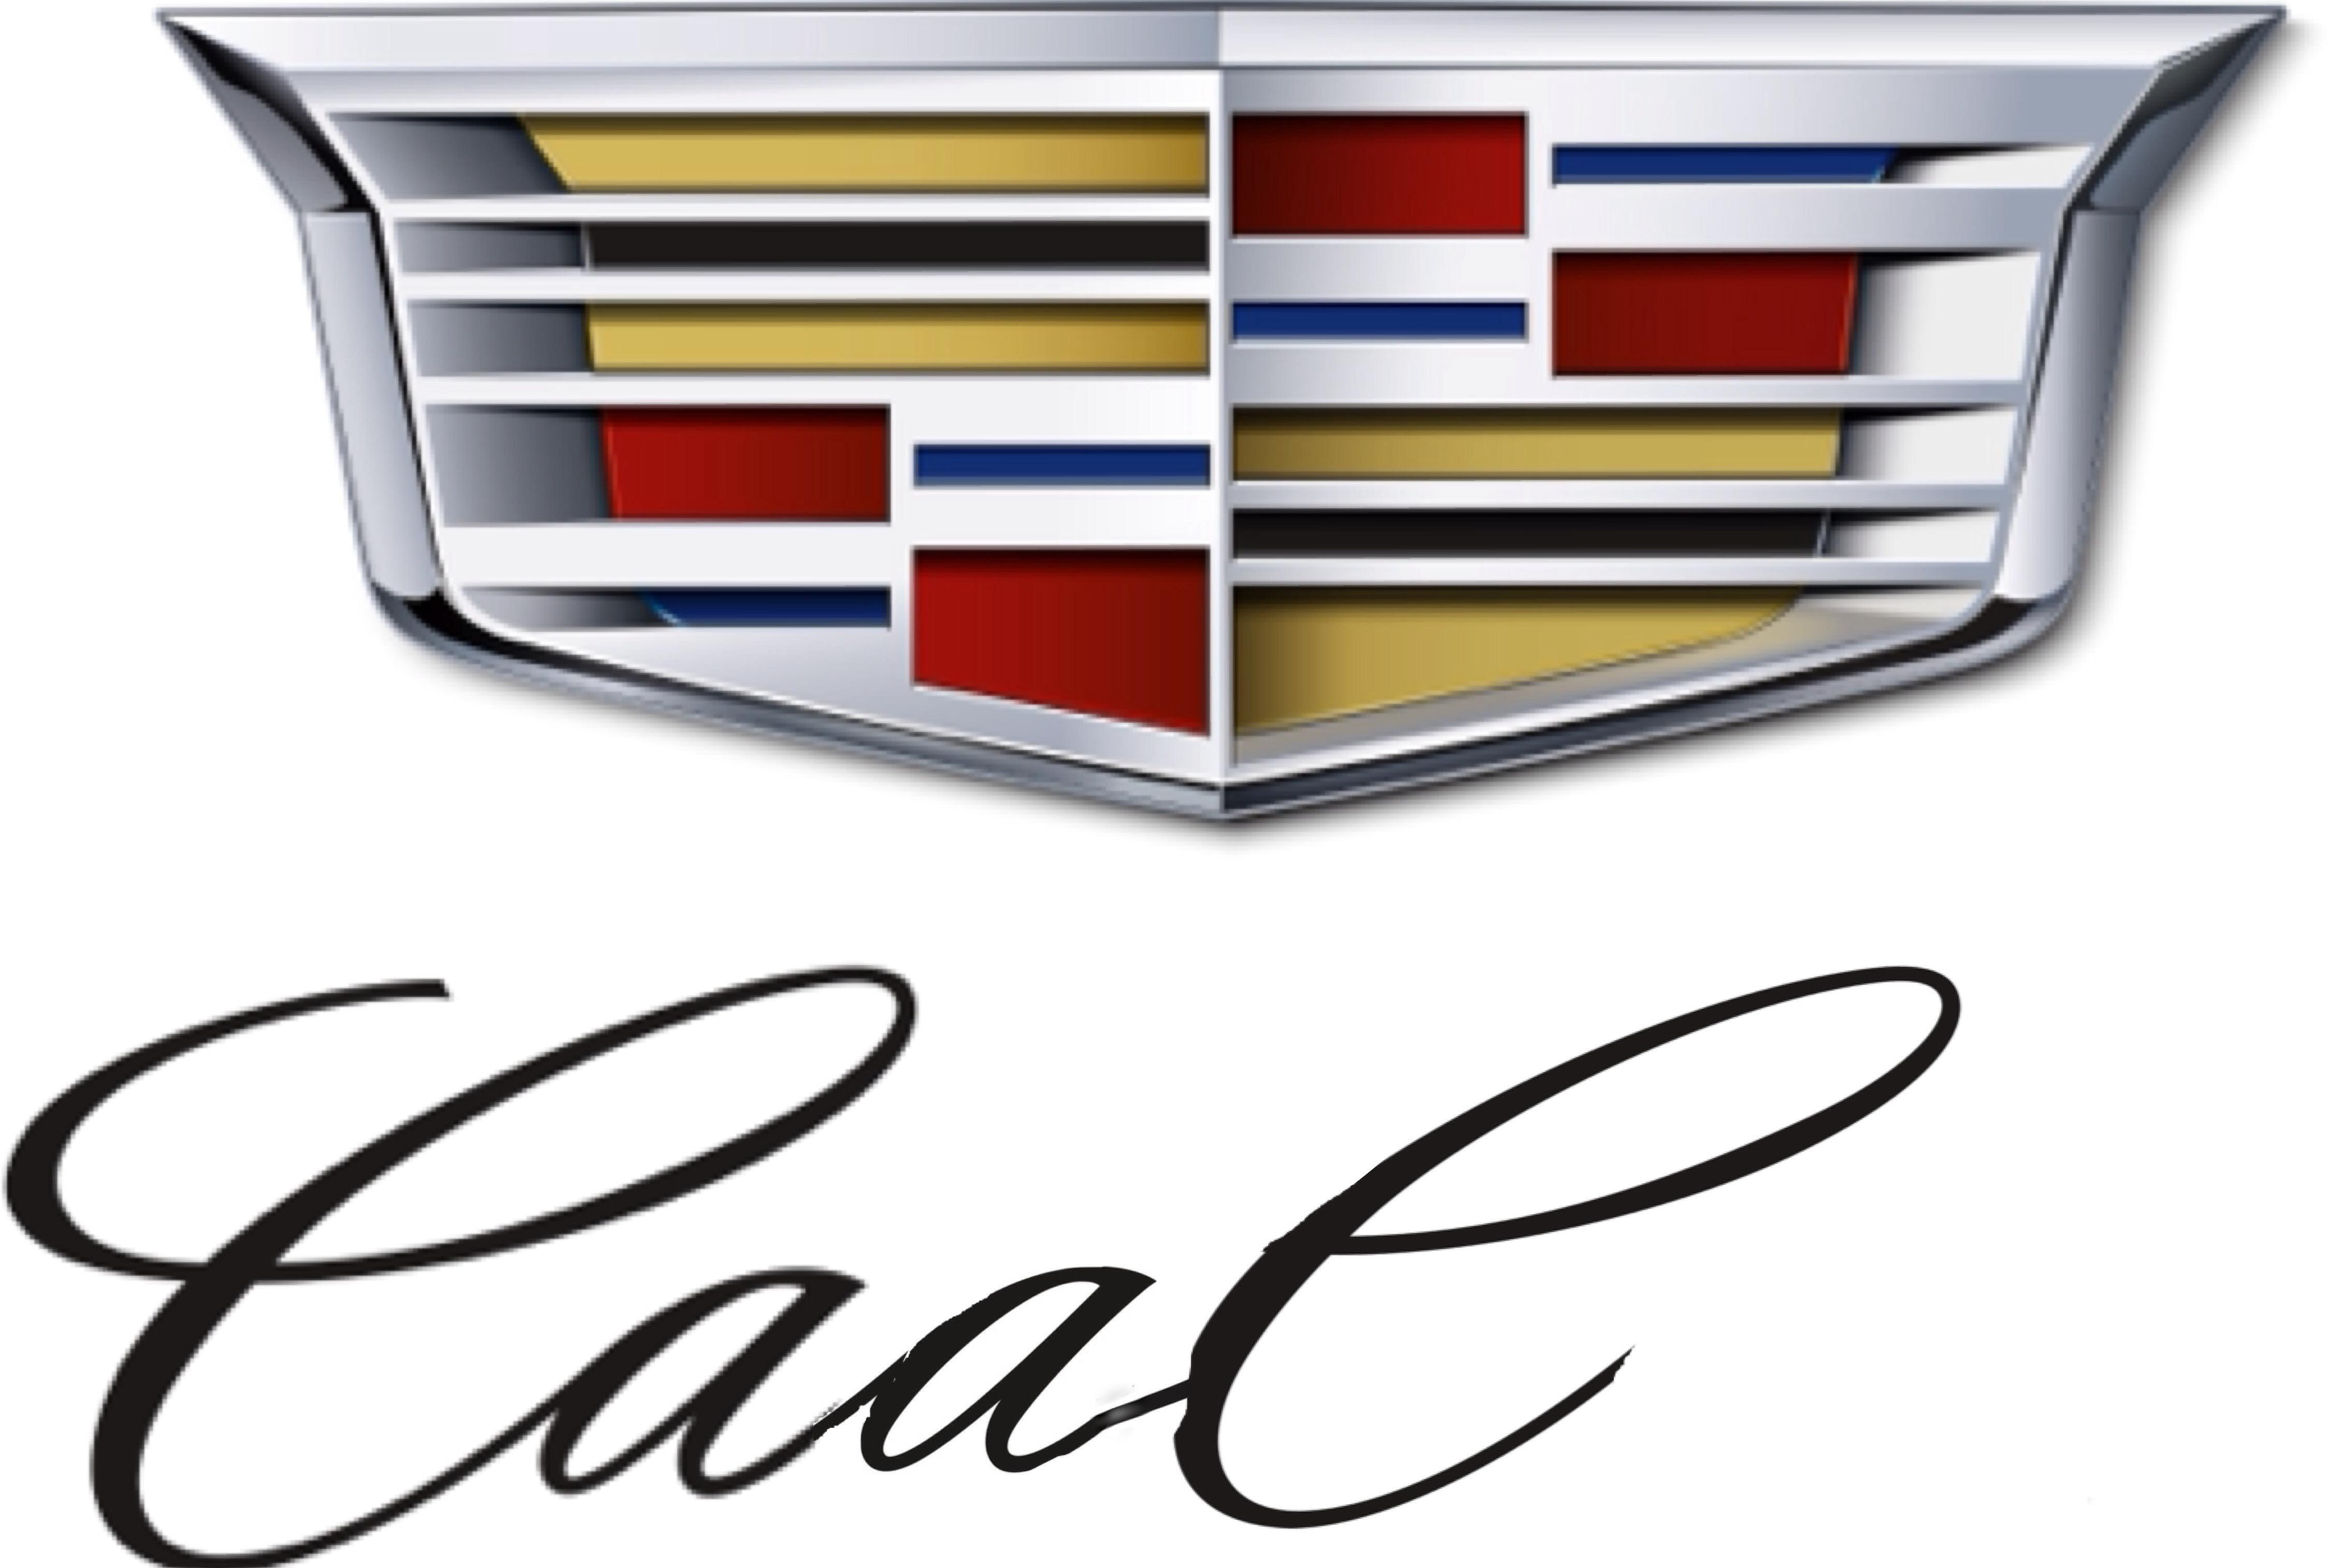 CAAC Logo - Caac